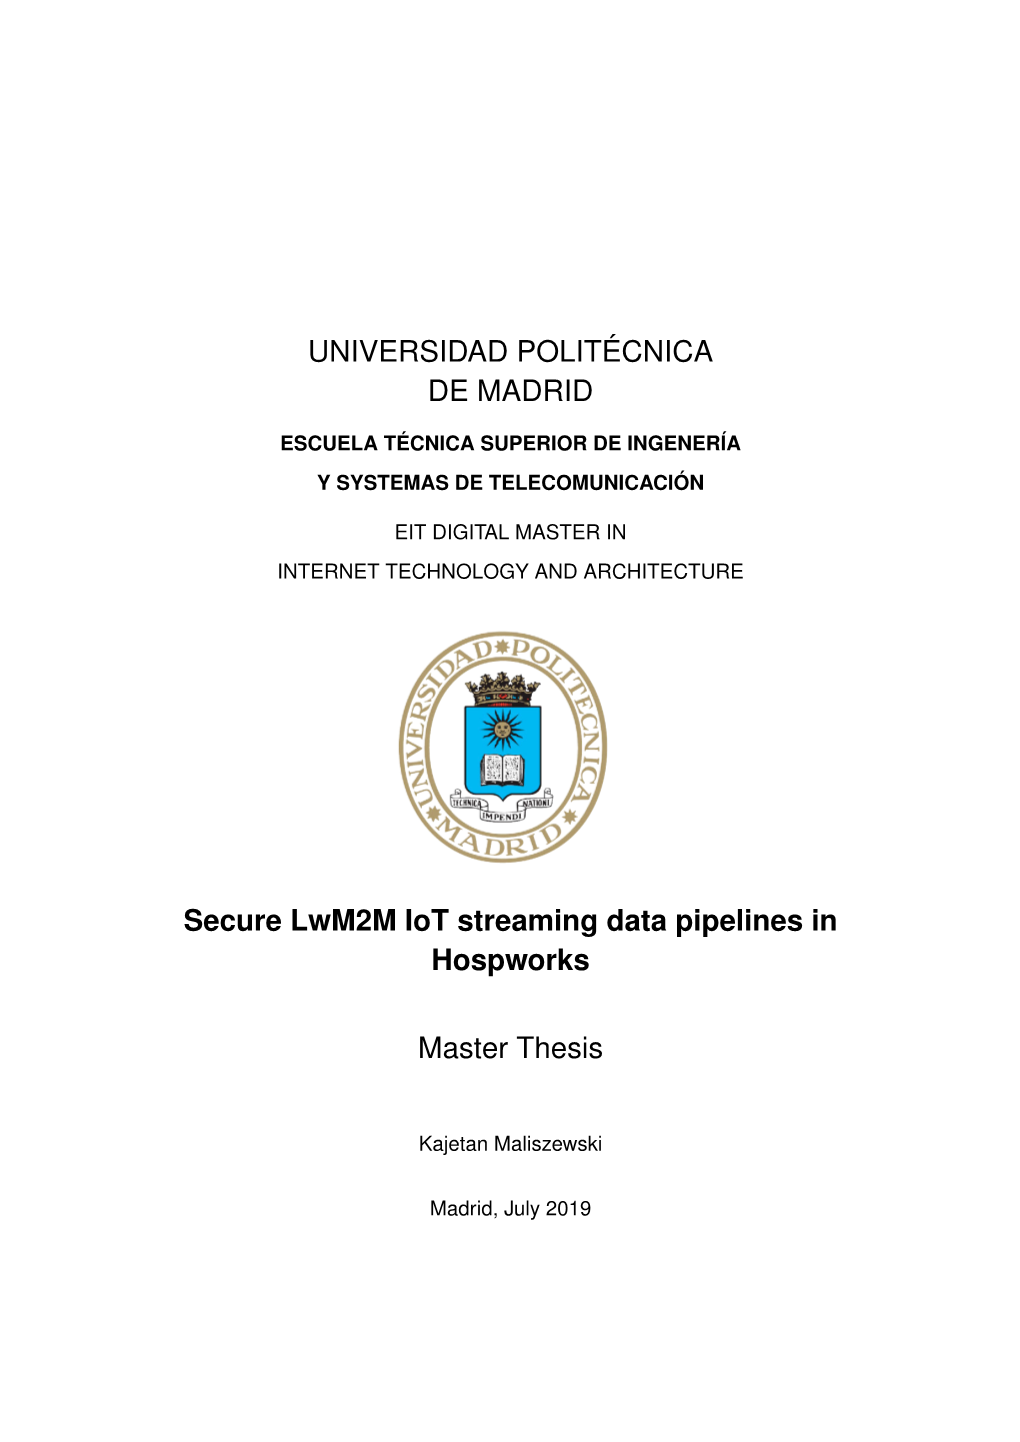 Secure Lwm2m Iot Streaming Data Pipelines in Hospworks Master Thesis